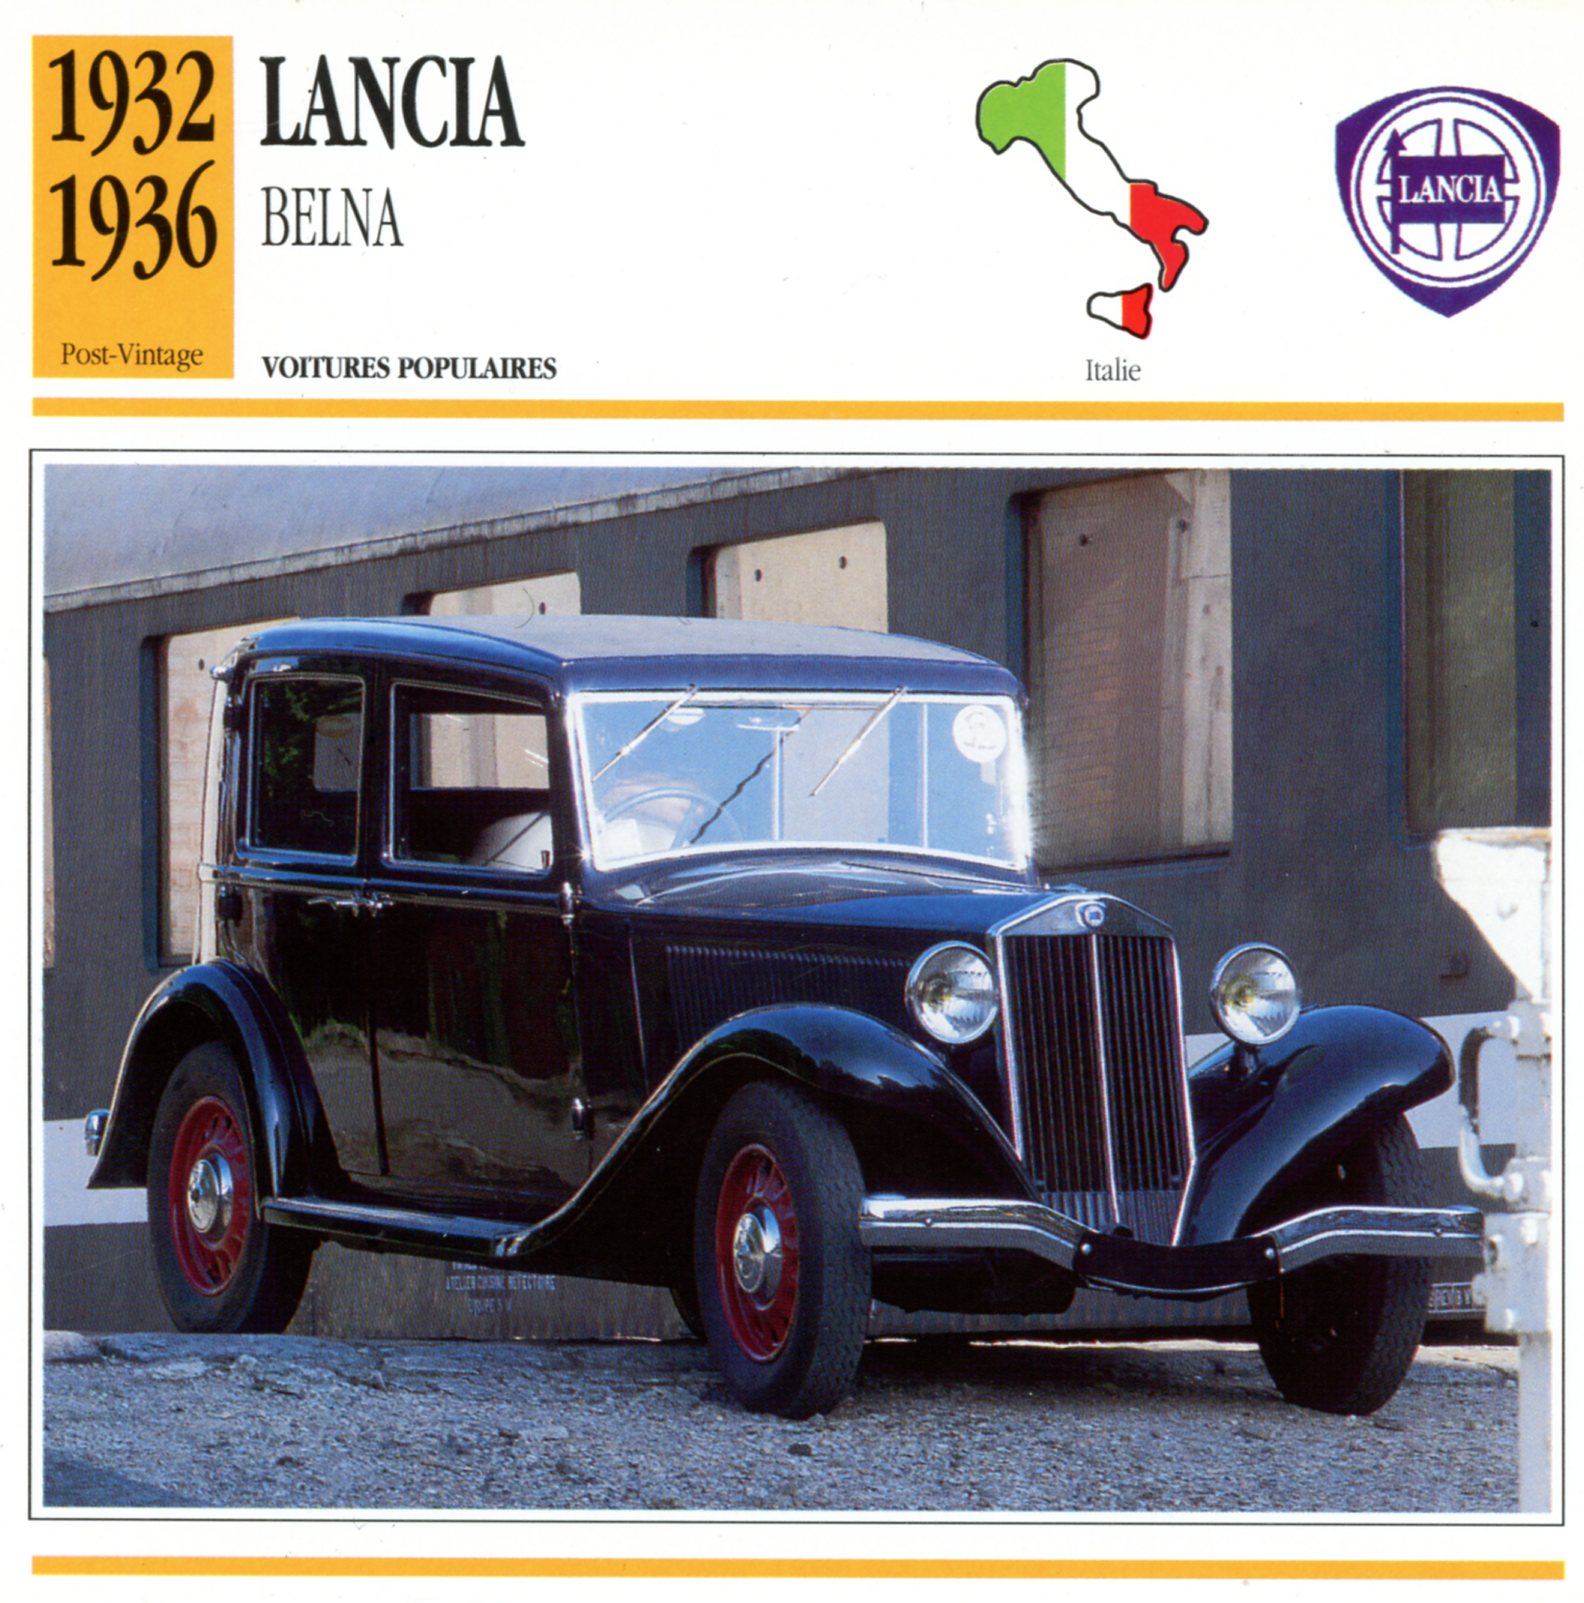 FICHE-AUTO-CARACTÉRISTIQUES-LANCIA-BELNA-1936-LEMASTERBROCKERS-CARS-CARD